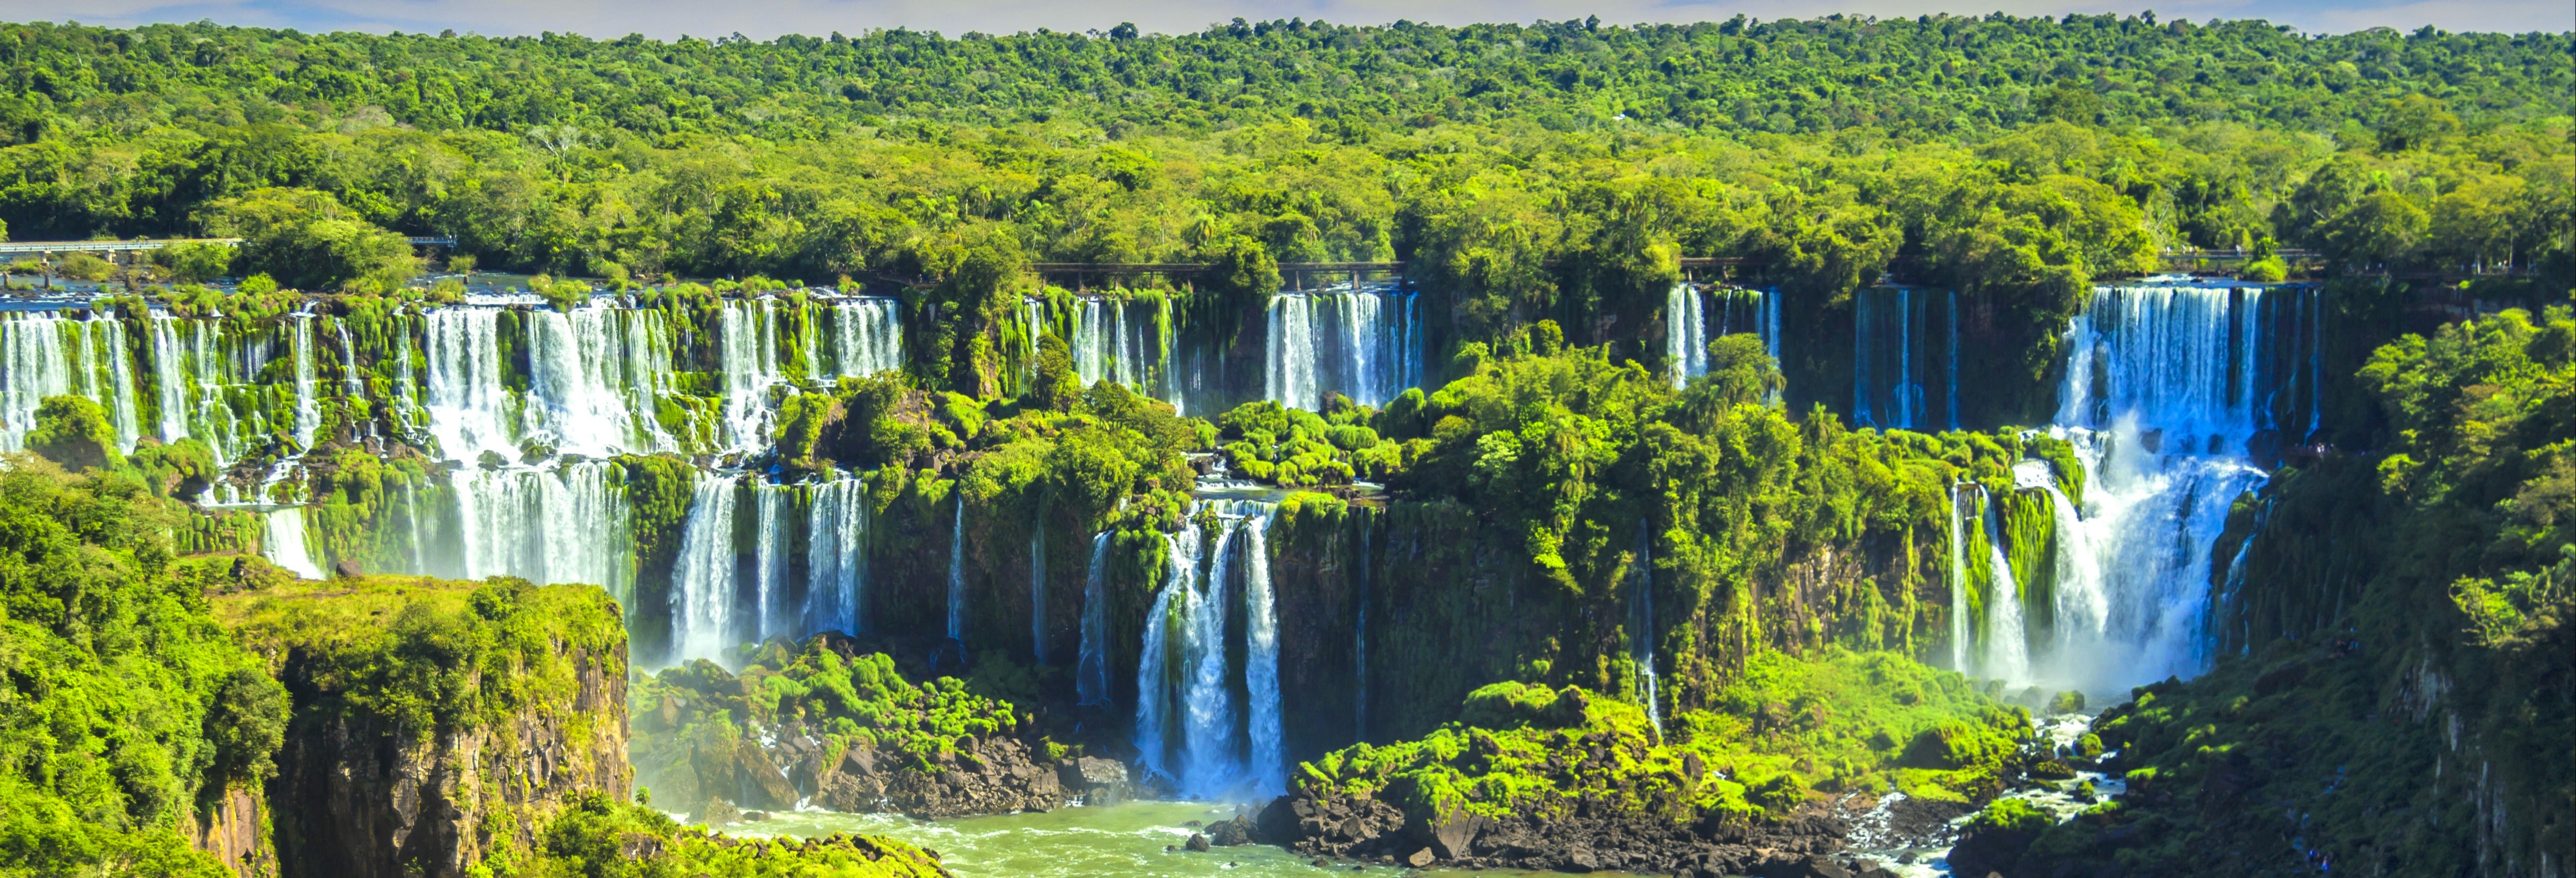 Excursão às Cataratas do Iguaçu